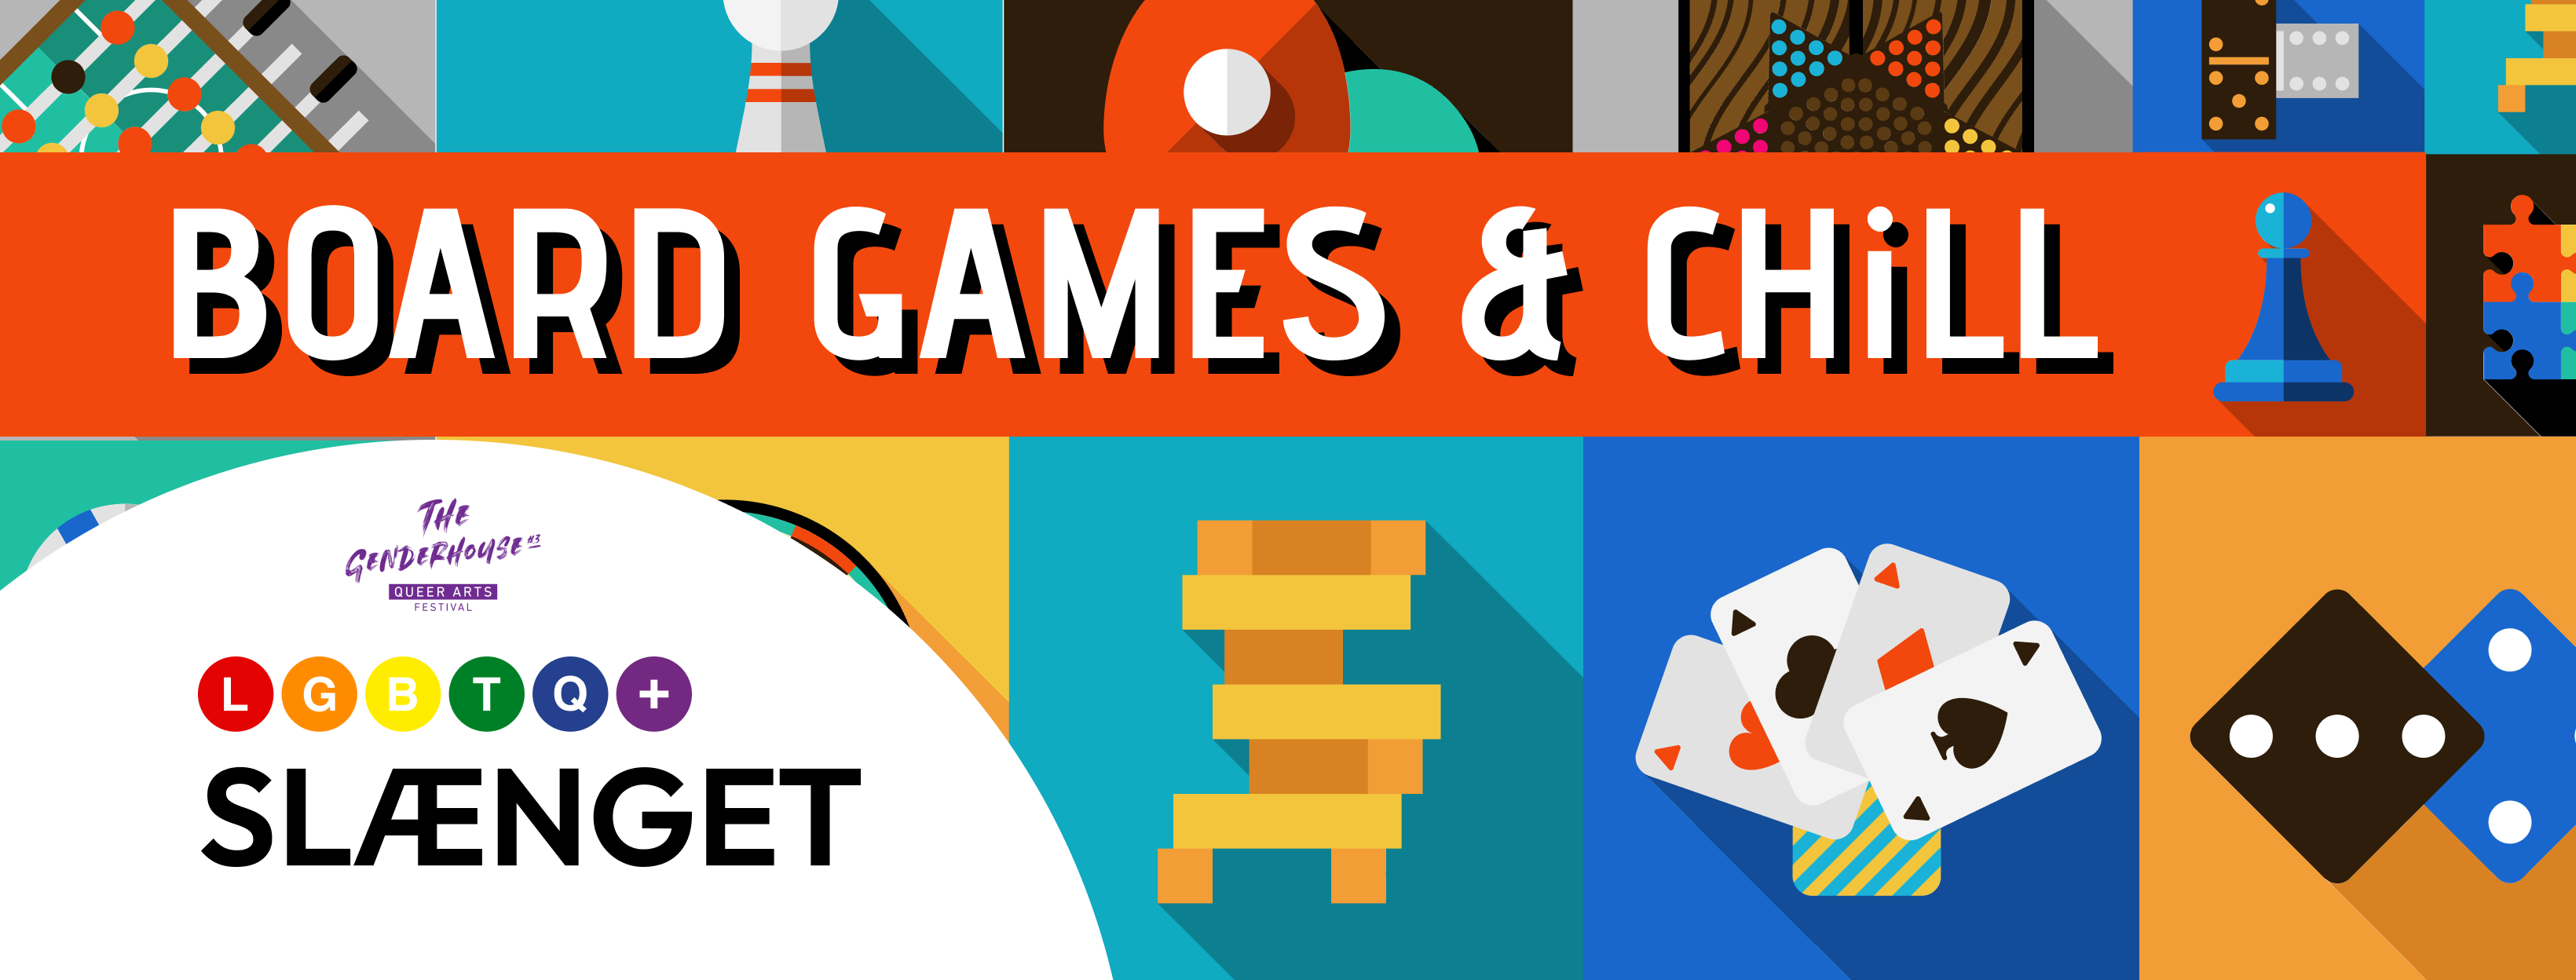 Board Games & Chill - 27. & 28. maj (18:00)